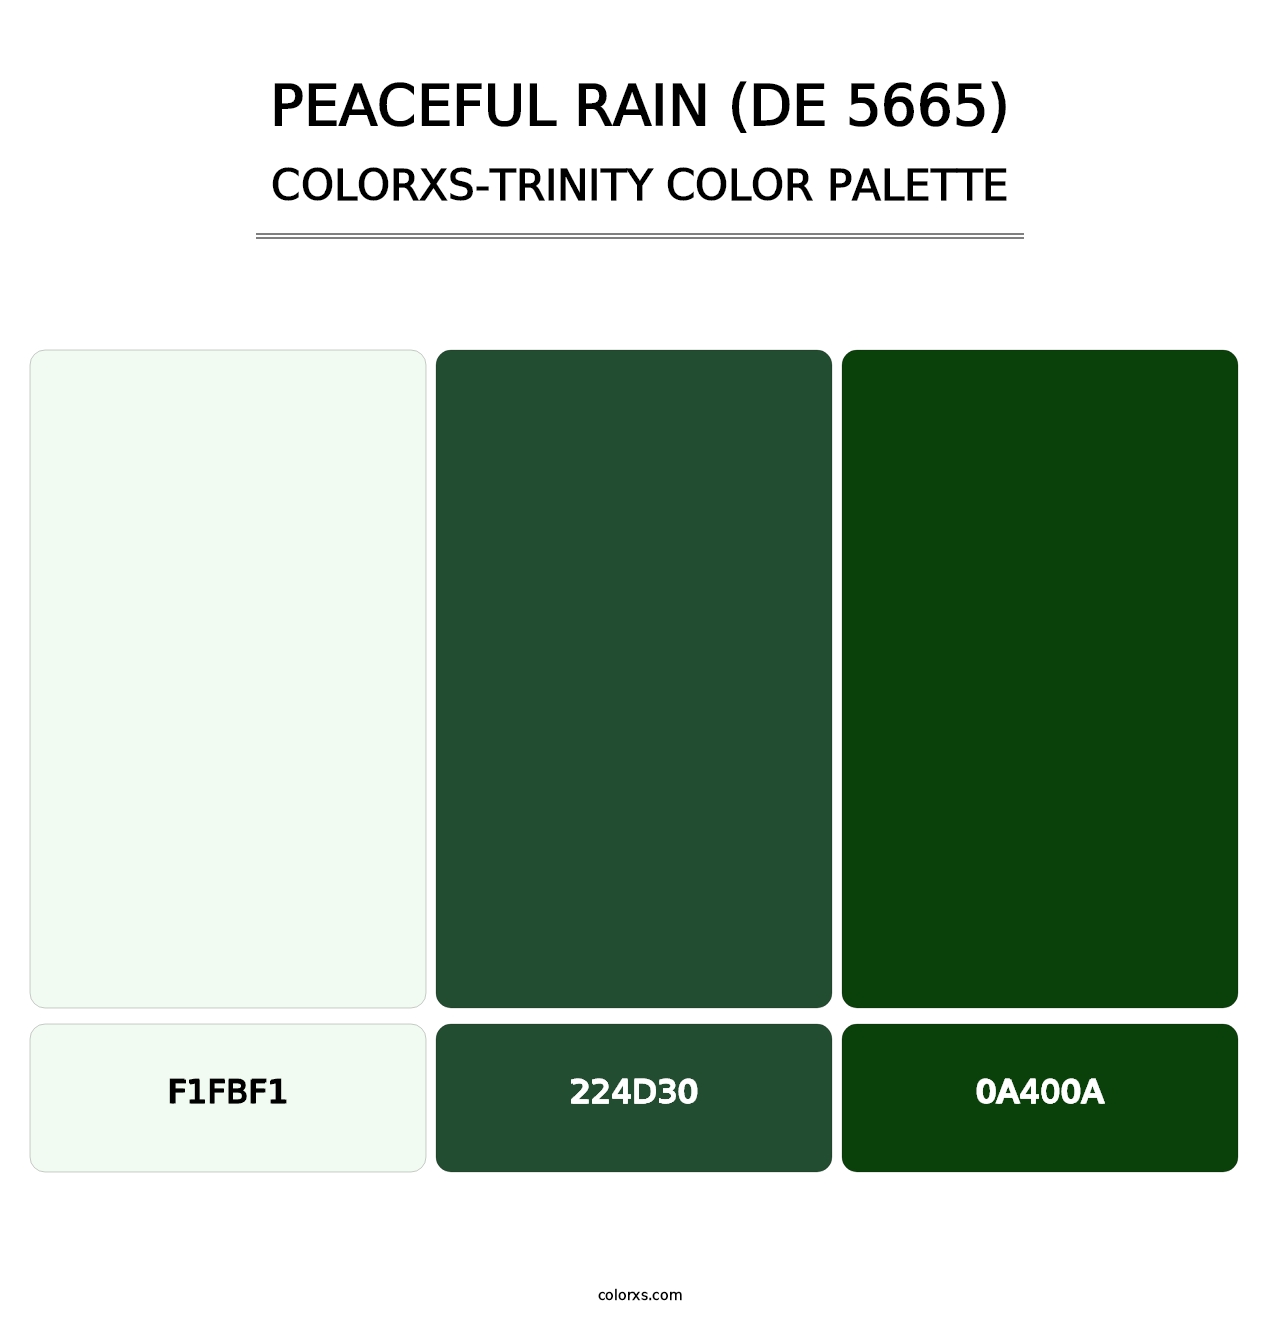 Peaceful Rain (DE 5665) - Colorxs Trinity Palette